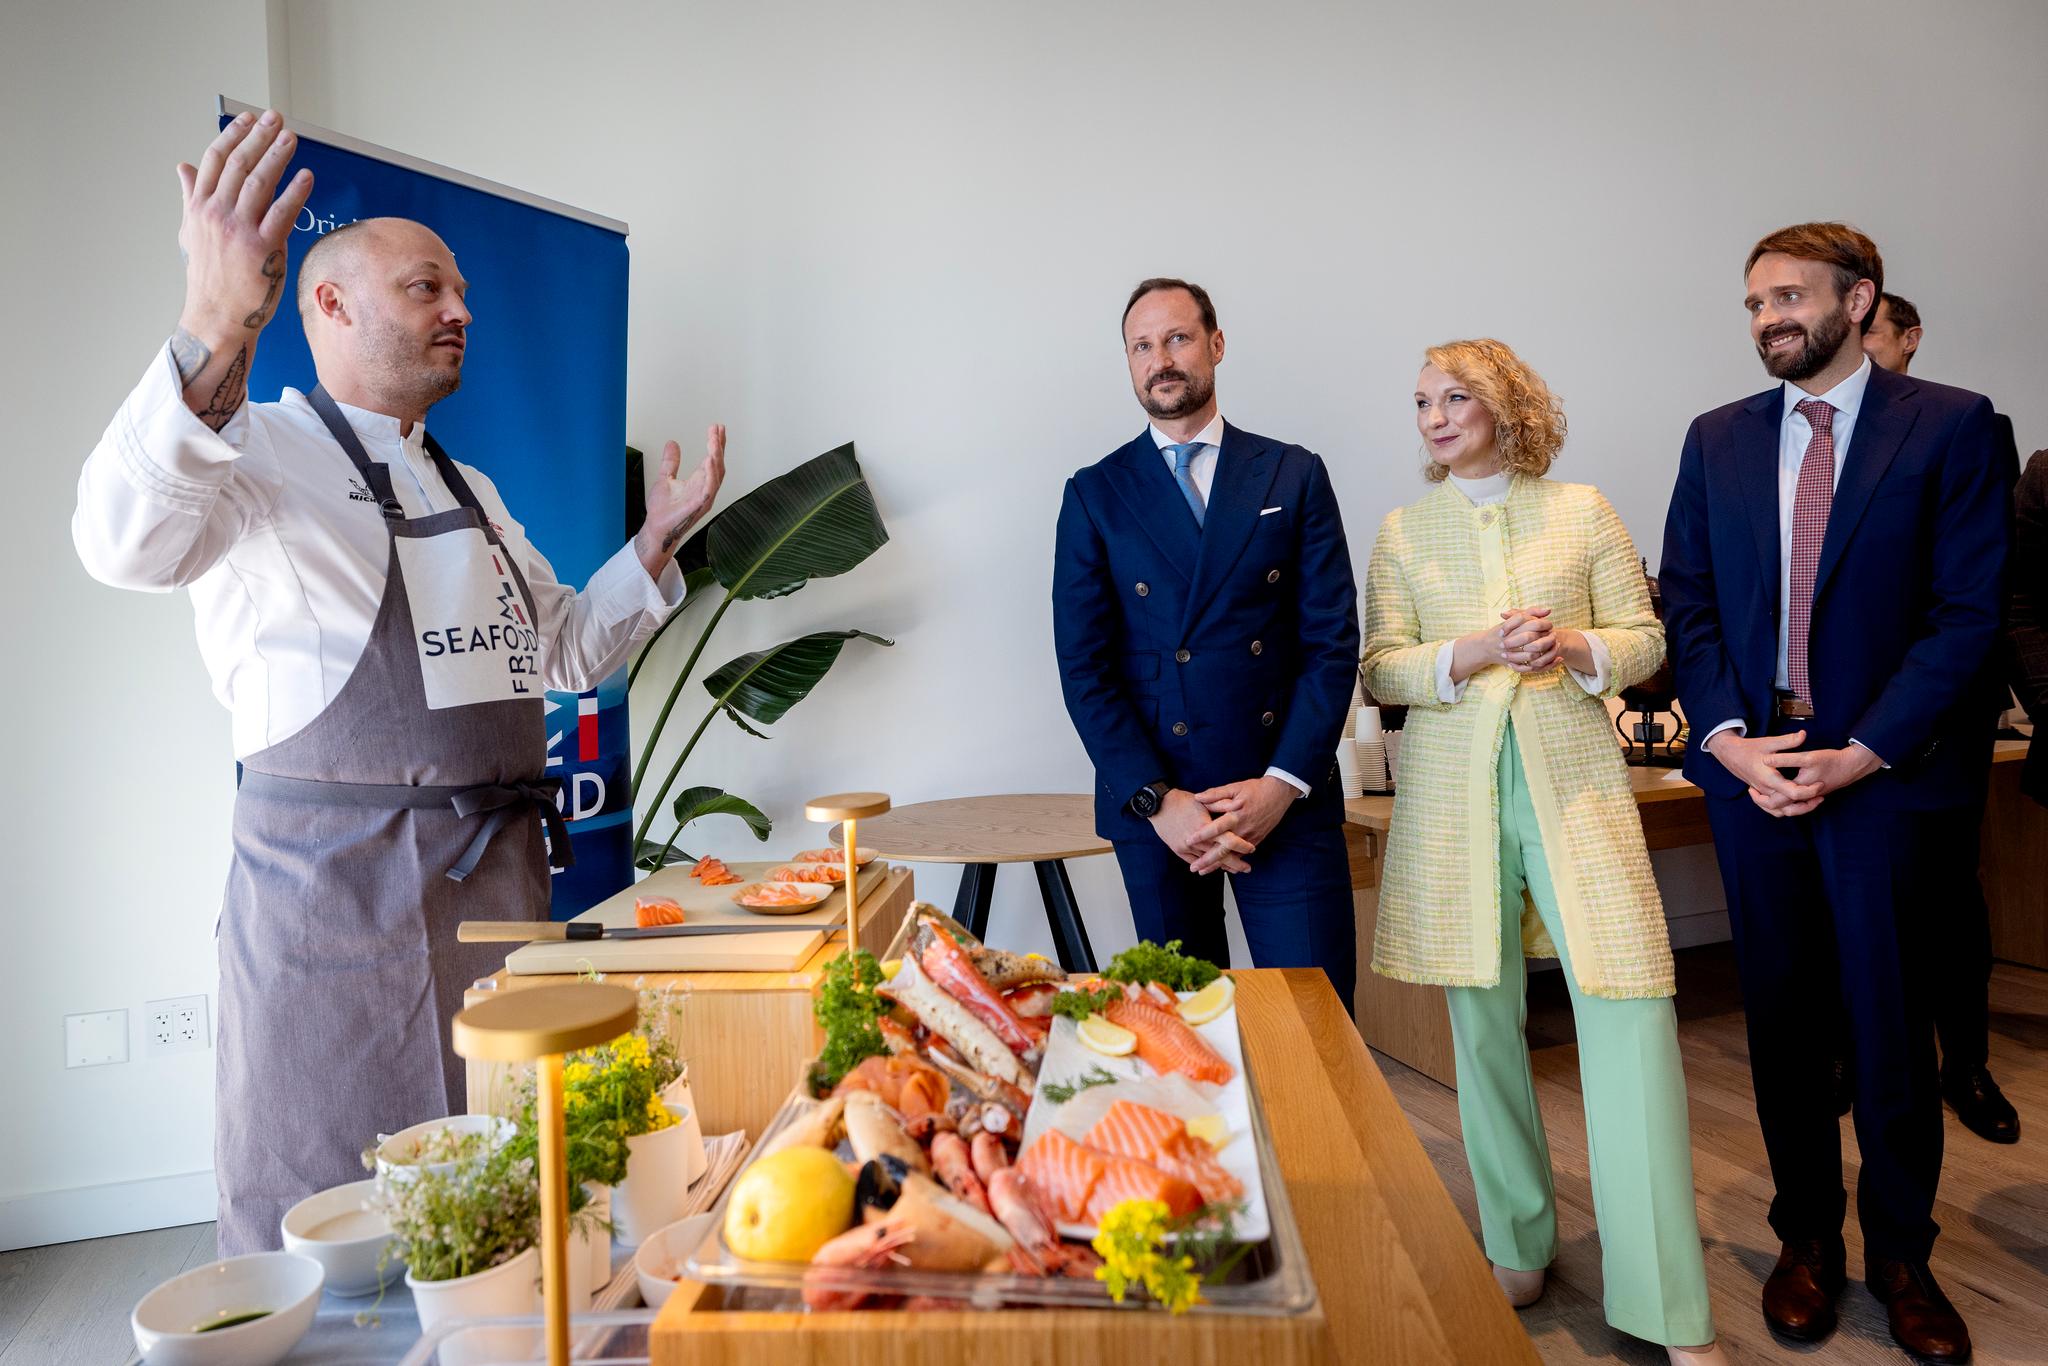 Kronprins Haakon, digitaliseringsminister Karianne Tung og næringsminister Jan Christian Vestre hører stjernekokken Christopher Haatuft fortelle om restaurantplaner i San Francisco.